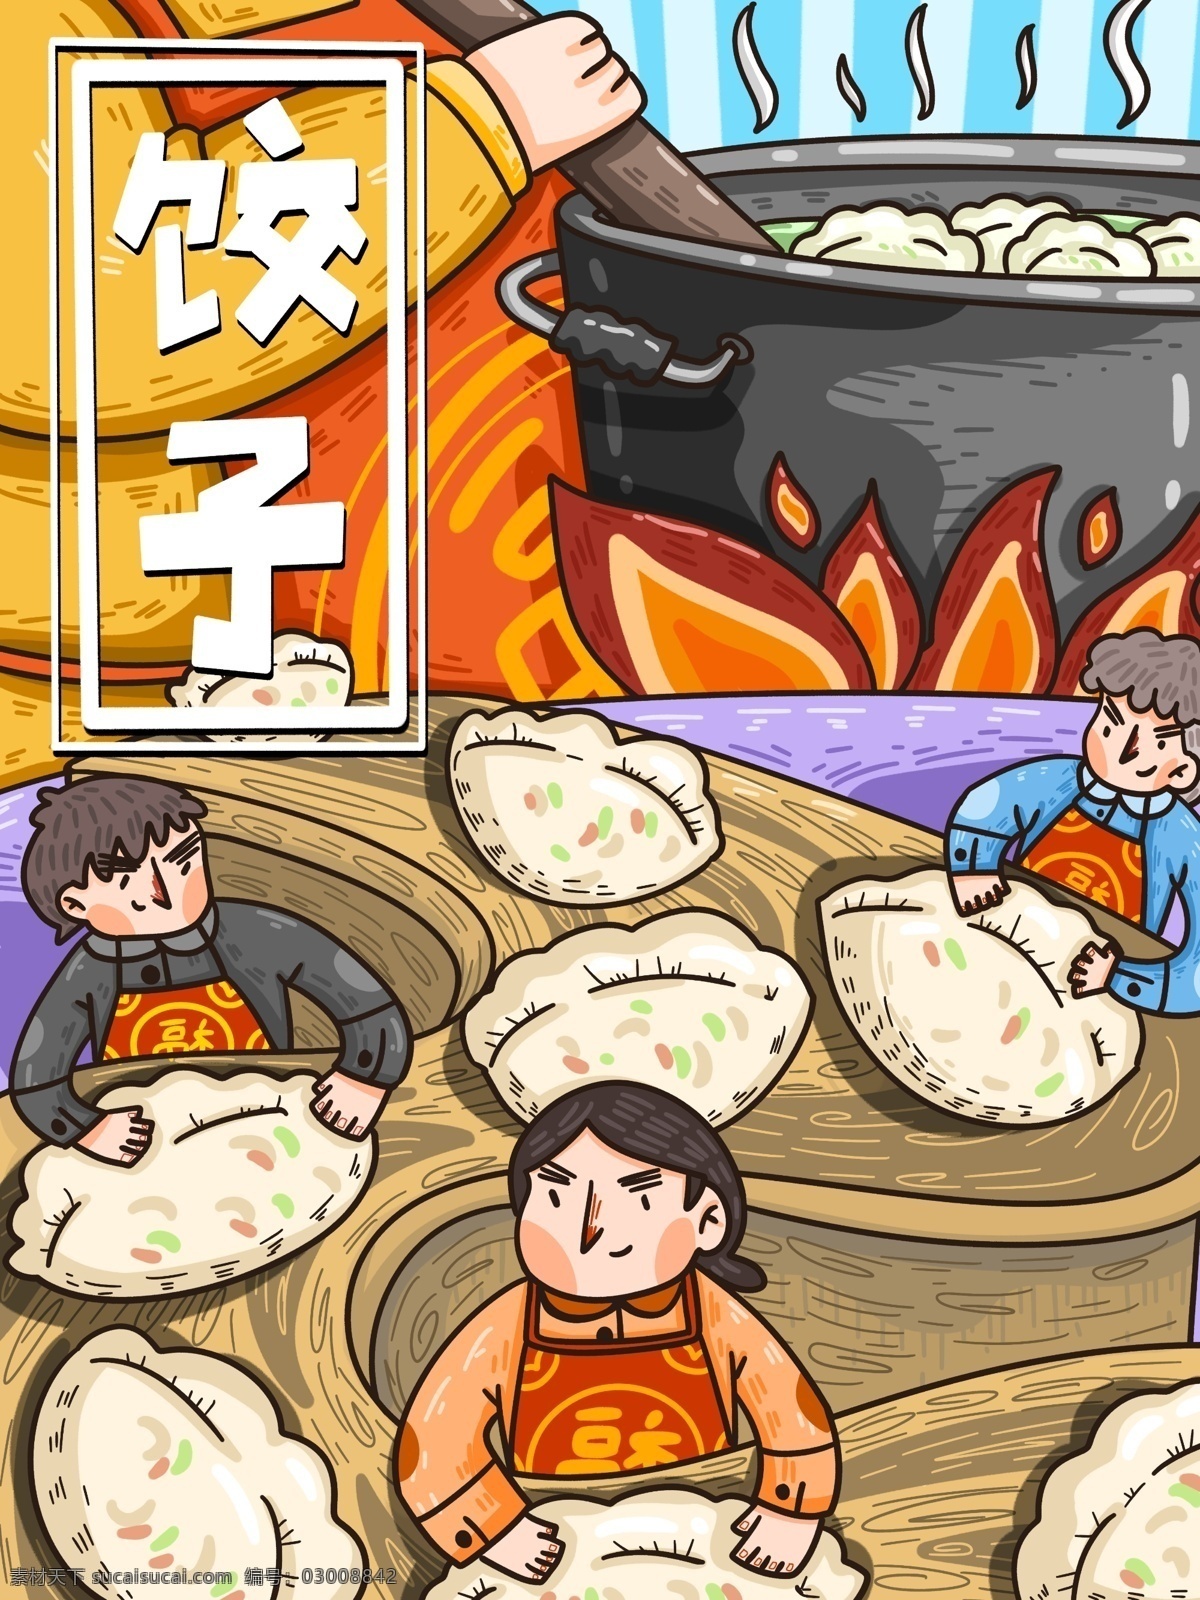 奇幻 饺子 世界 正在 包 小人 壁纸 插画 封面 插图 童话 原创 商用